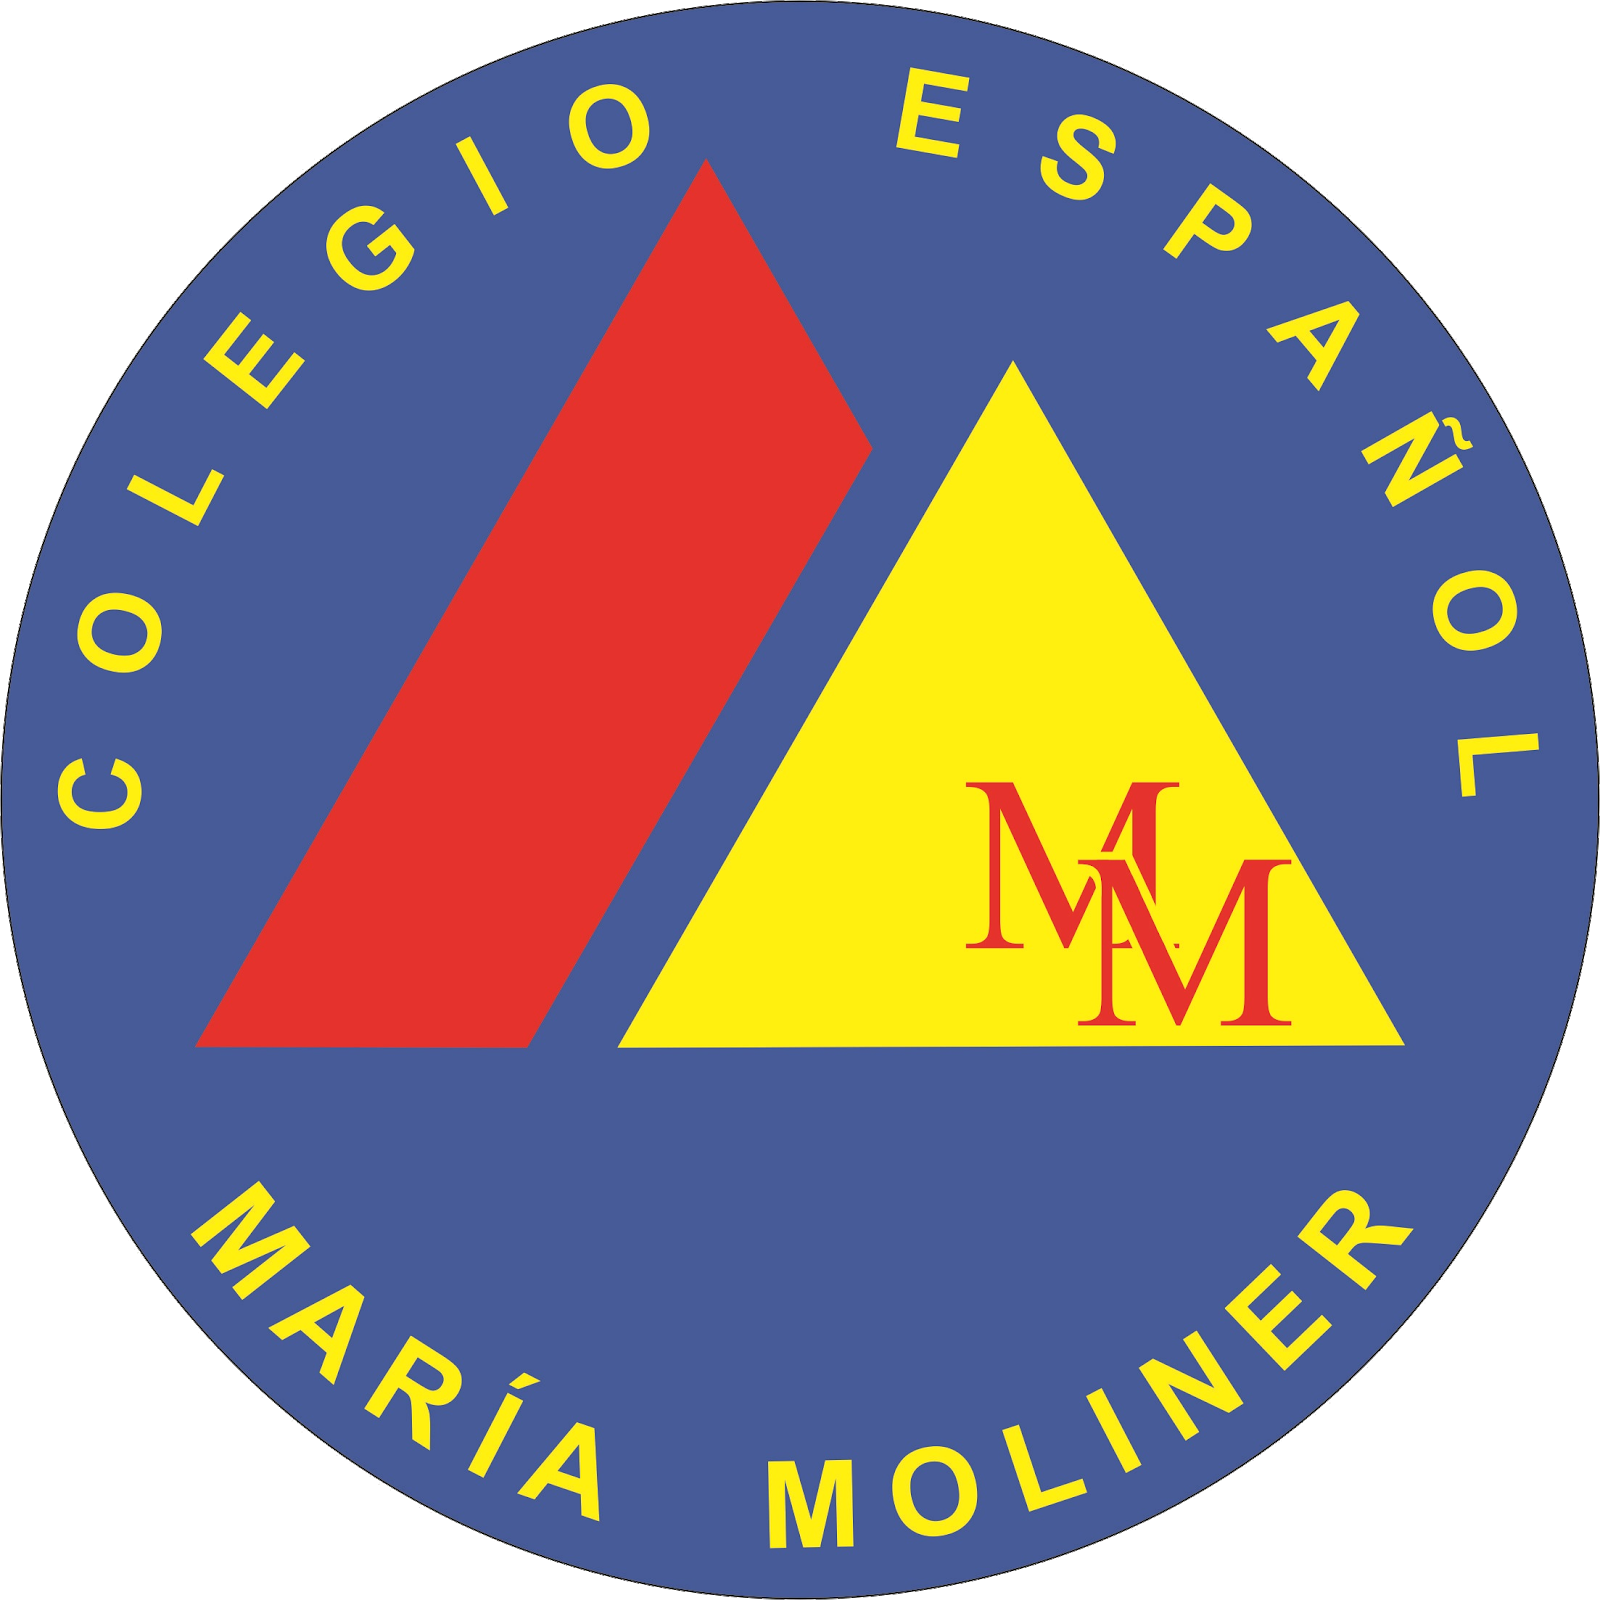 Colegio español María Moliner